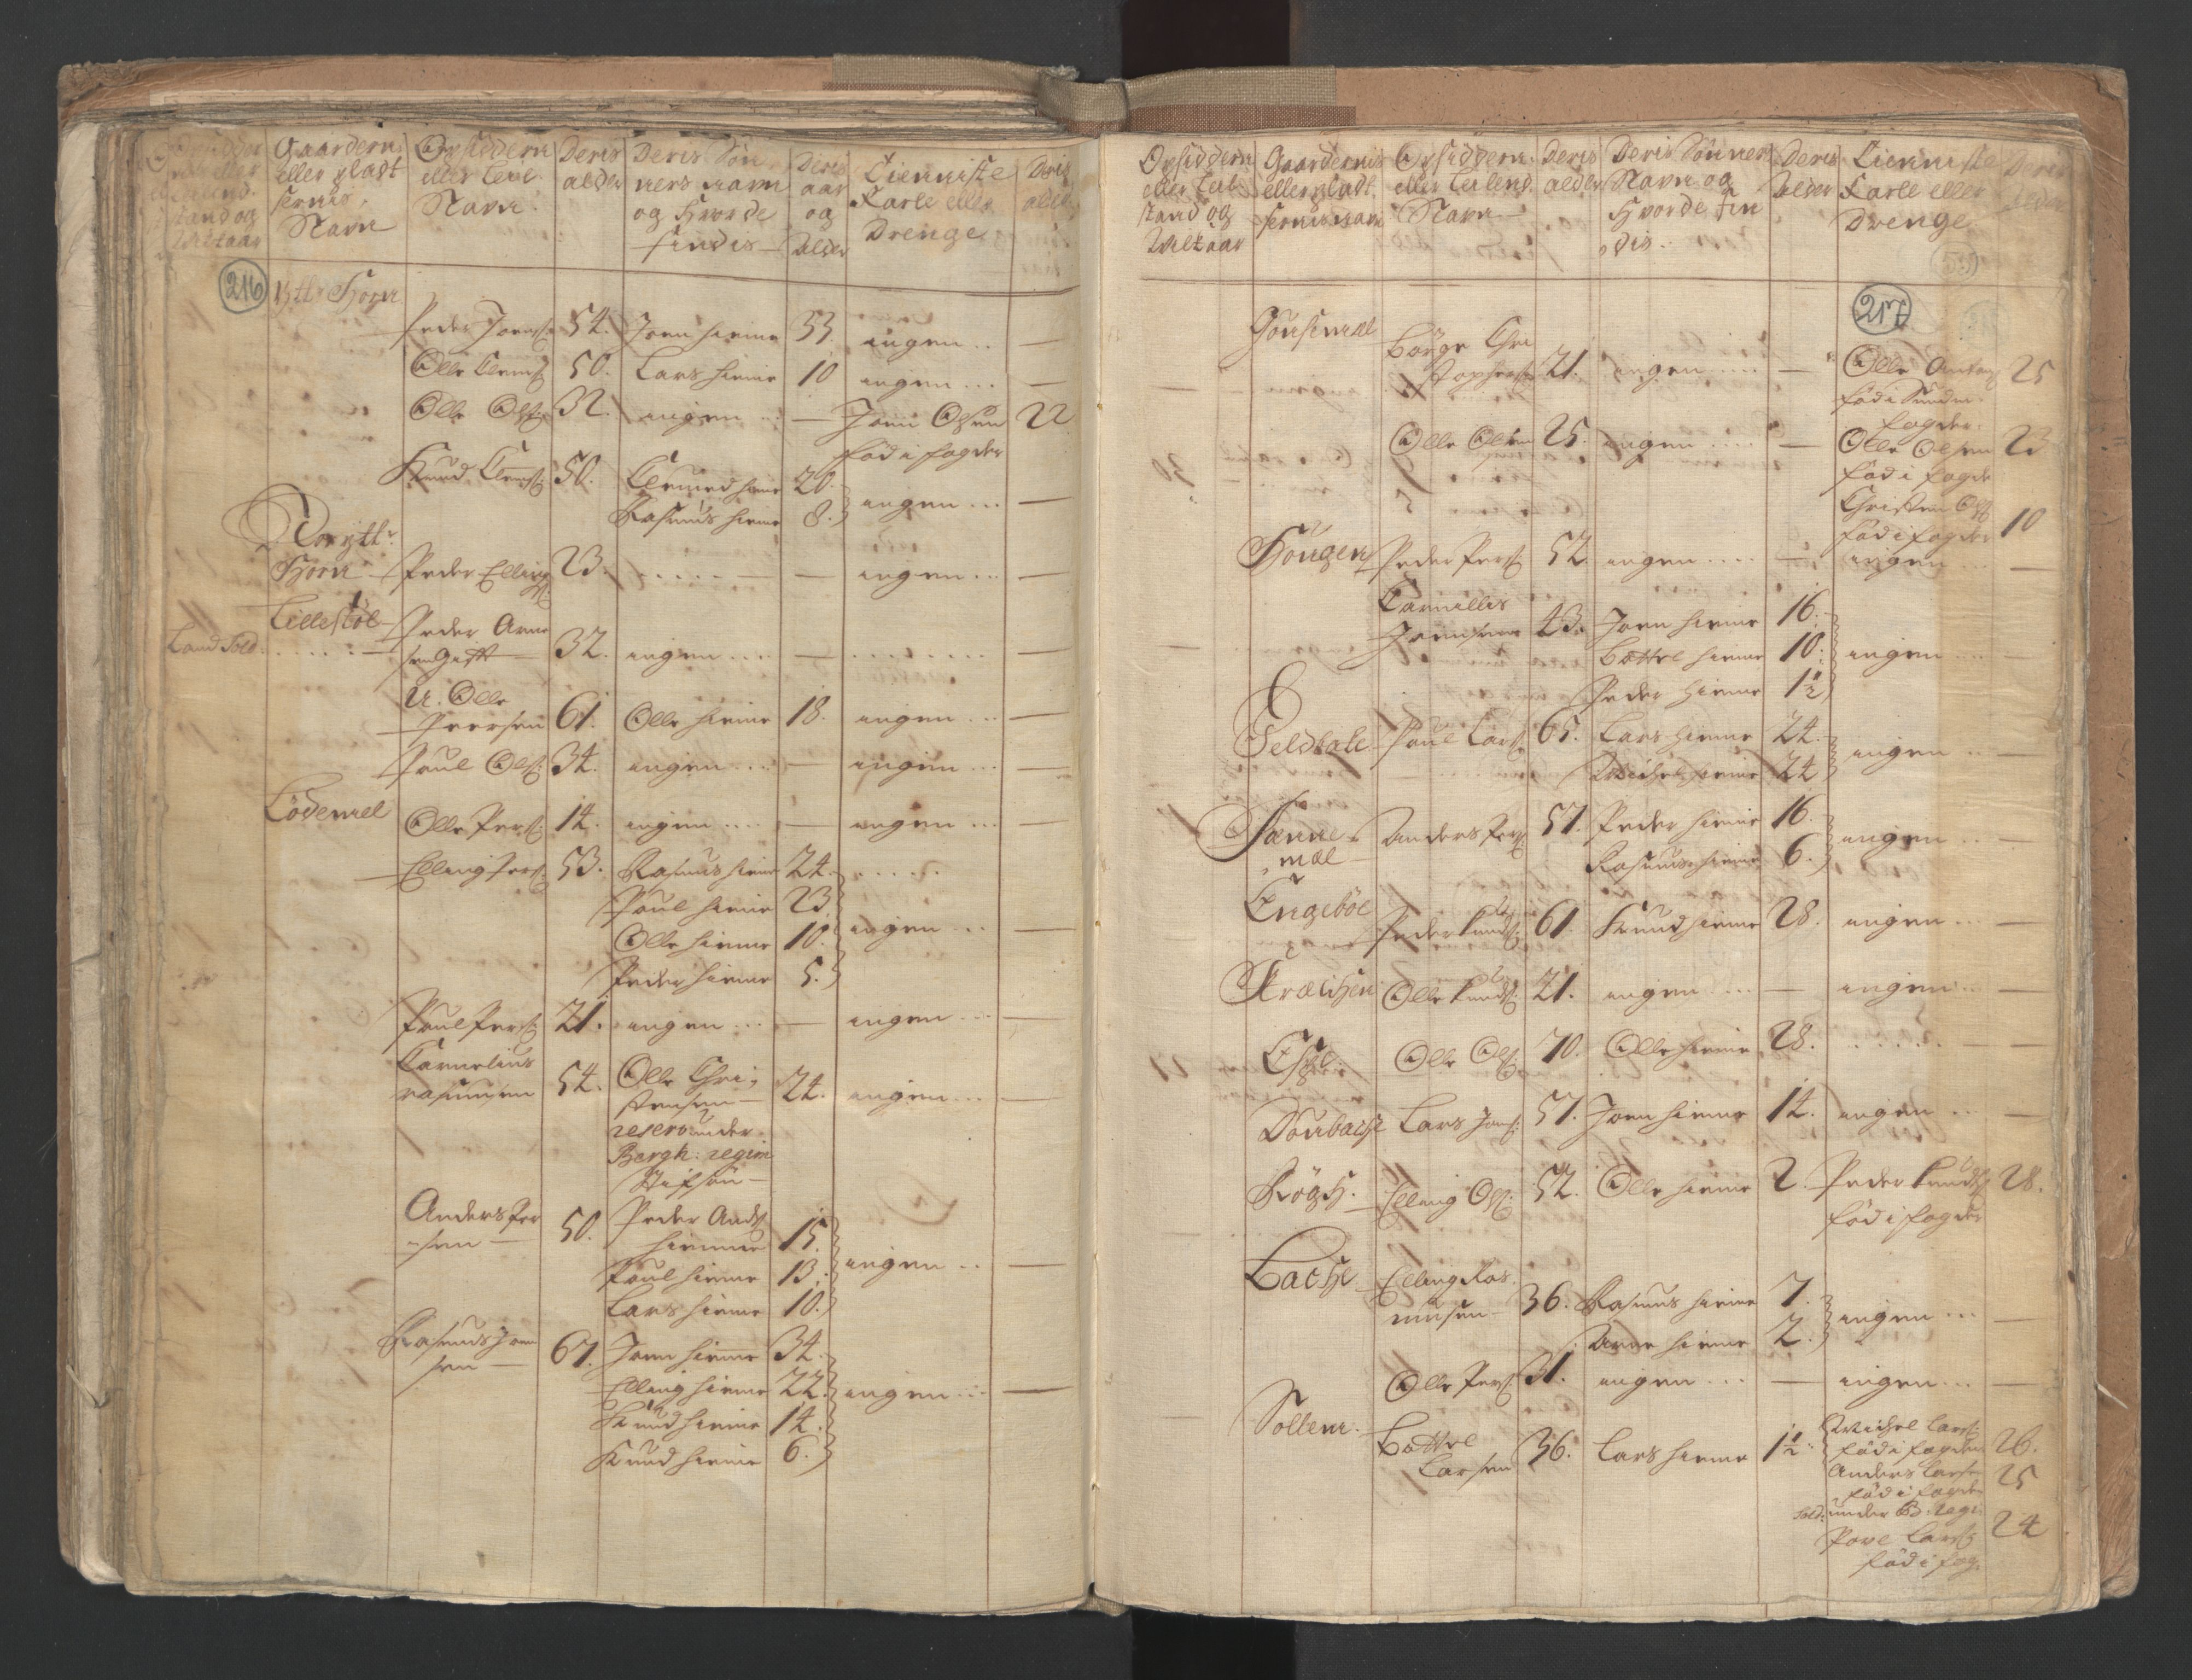 RA, Census (manntall) 1701, no. 9: Sunnfjord fogderi, Nordfjord fogderi and Svanø birk, 1701, p. 216-217